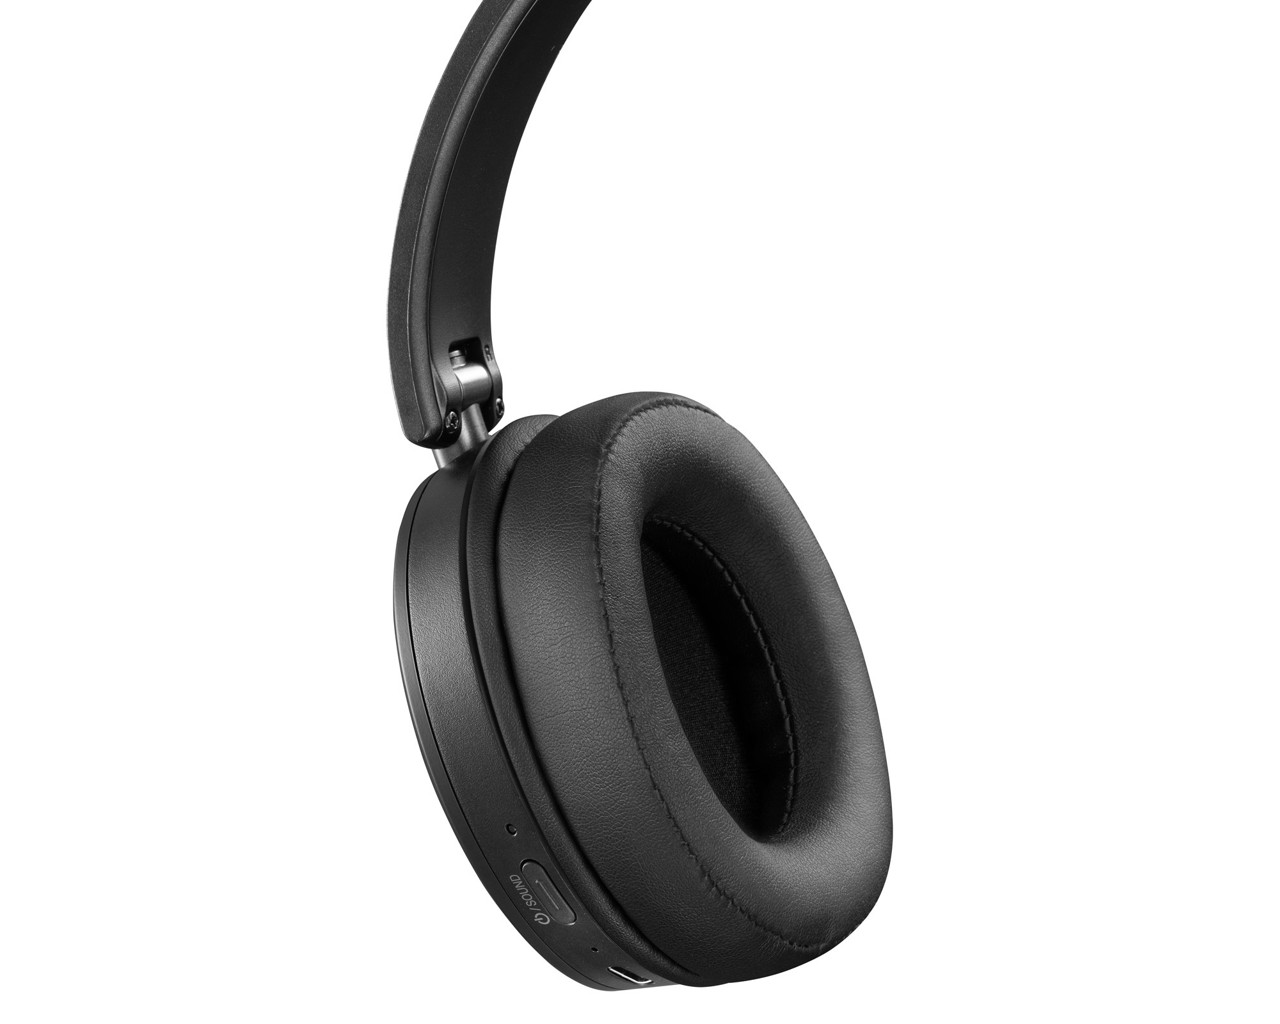 JVC HA-S91N-BU Bluetooth fejhallgató, fekete színben, aktív zajszűrős...